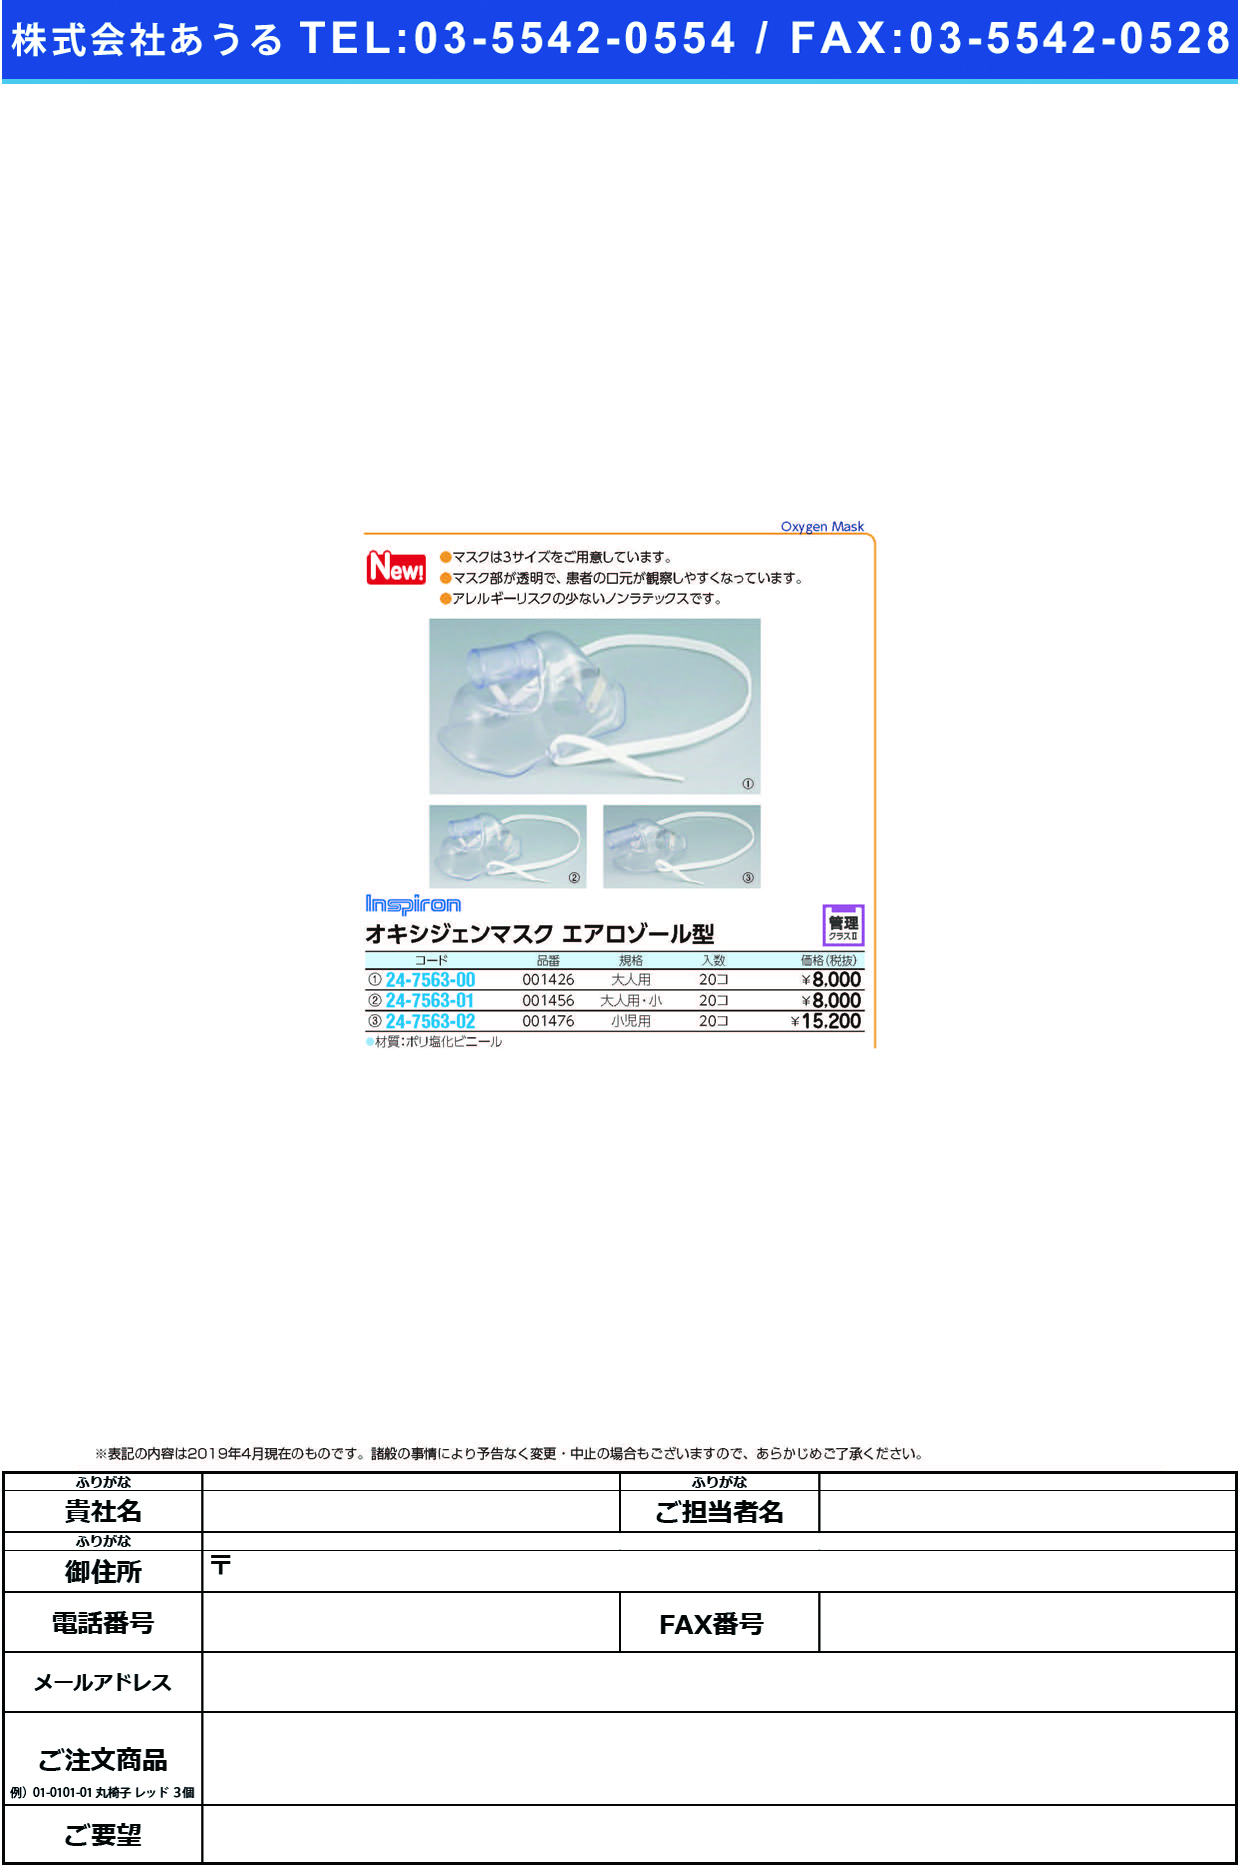 (24-7563-01)オキシジェンマスクエアロゾール型001456(ｵﾄﾅﾖｳｼｮｳ)20ｺ ｵｷｼｼﾞｪﾝﾏｽｸｴｱﾛｿﾞｰﾙｶﾞﾀ(日本メディカルネクスト)【1箱単位】【2019年カタログ商品】